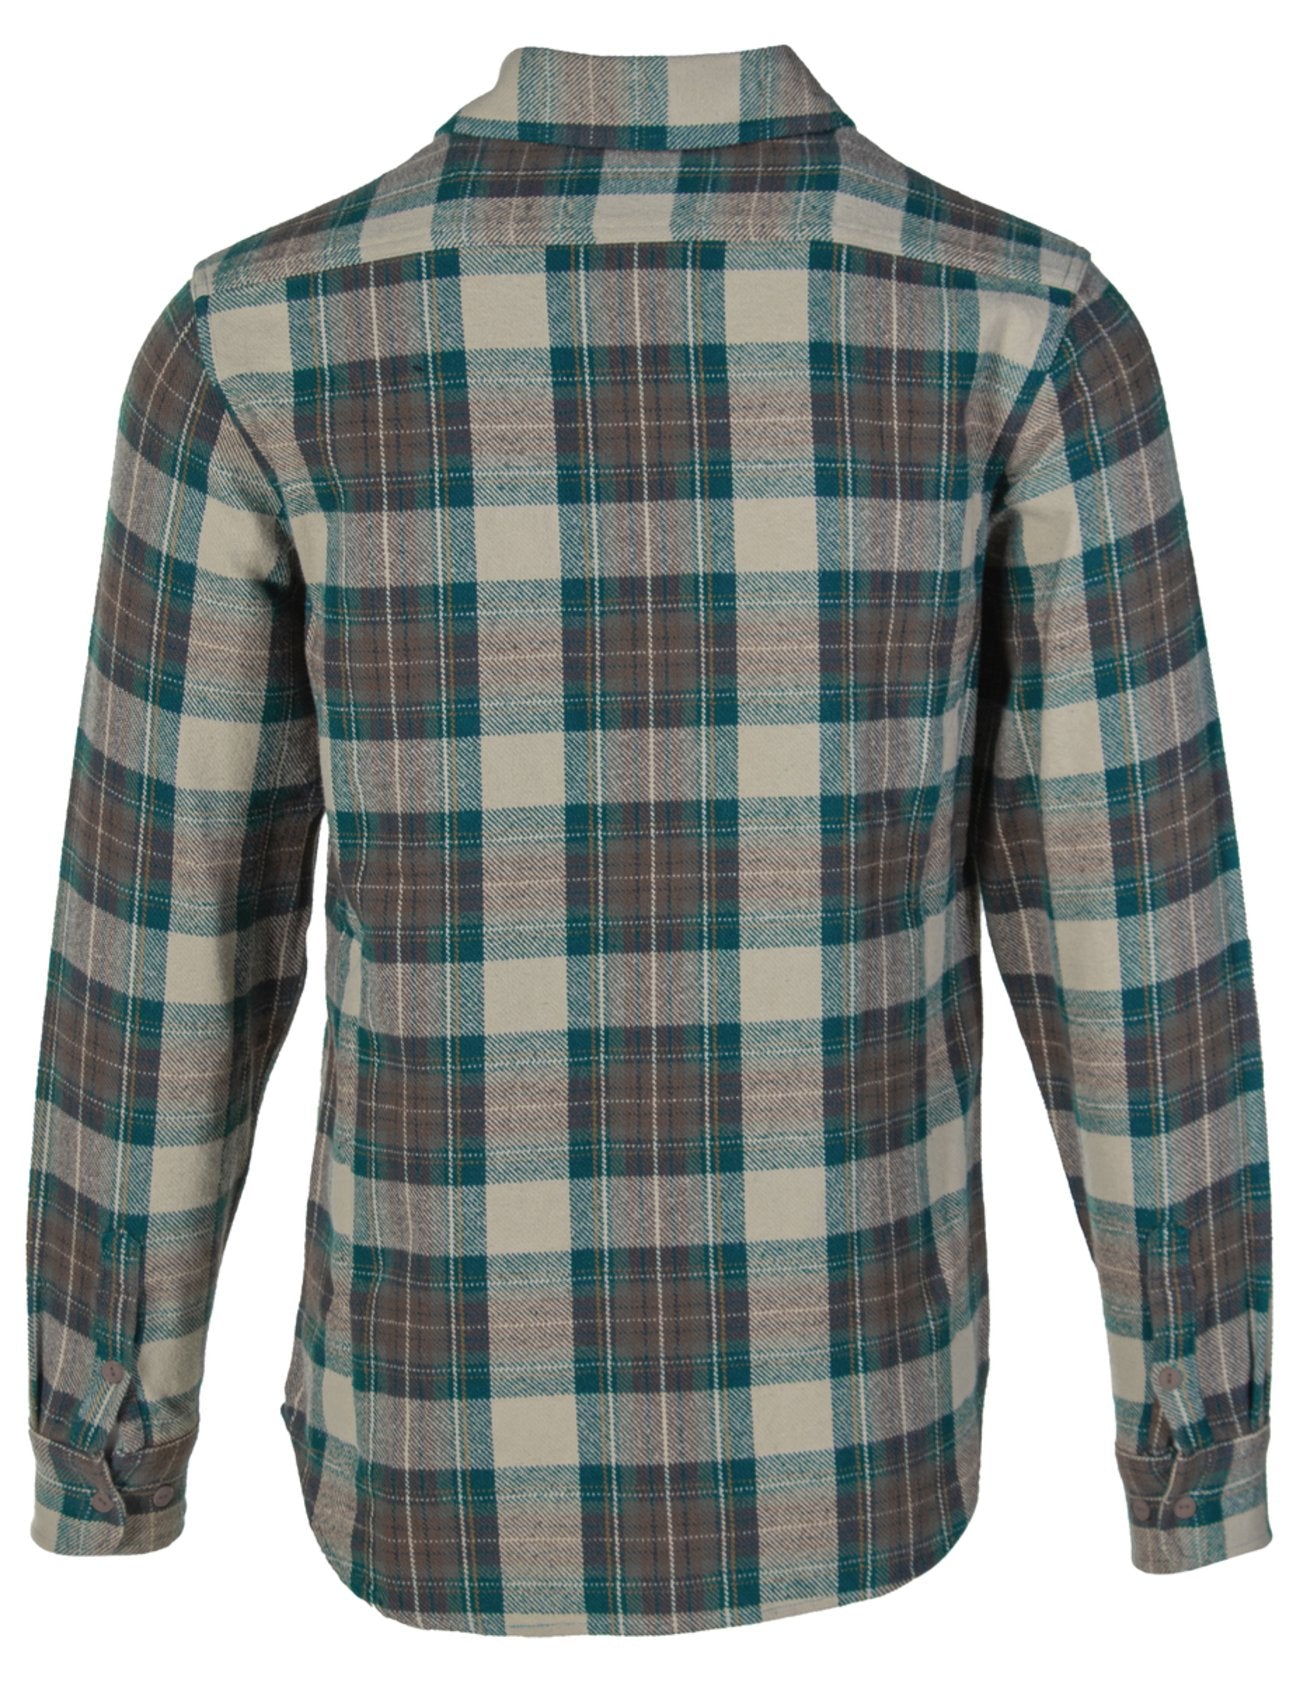 Schott N.Y.C. SH2135 Plaid Cotton Flannel Shirt